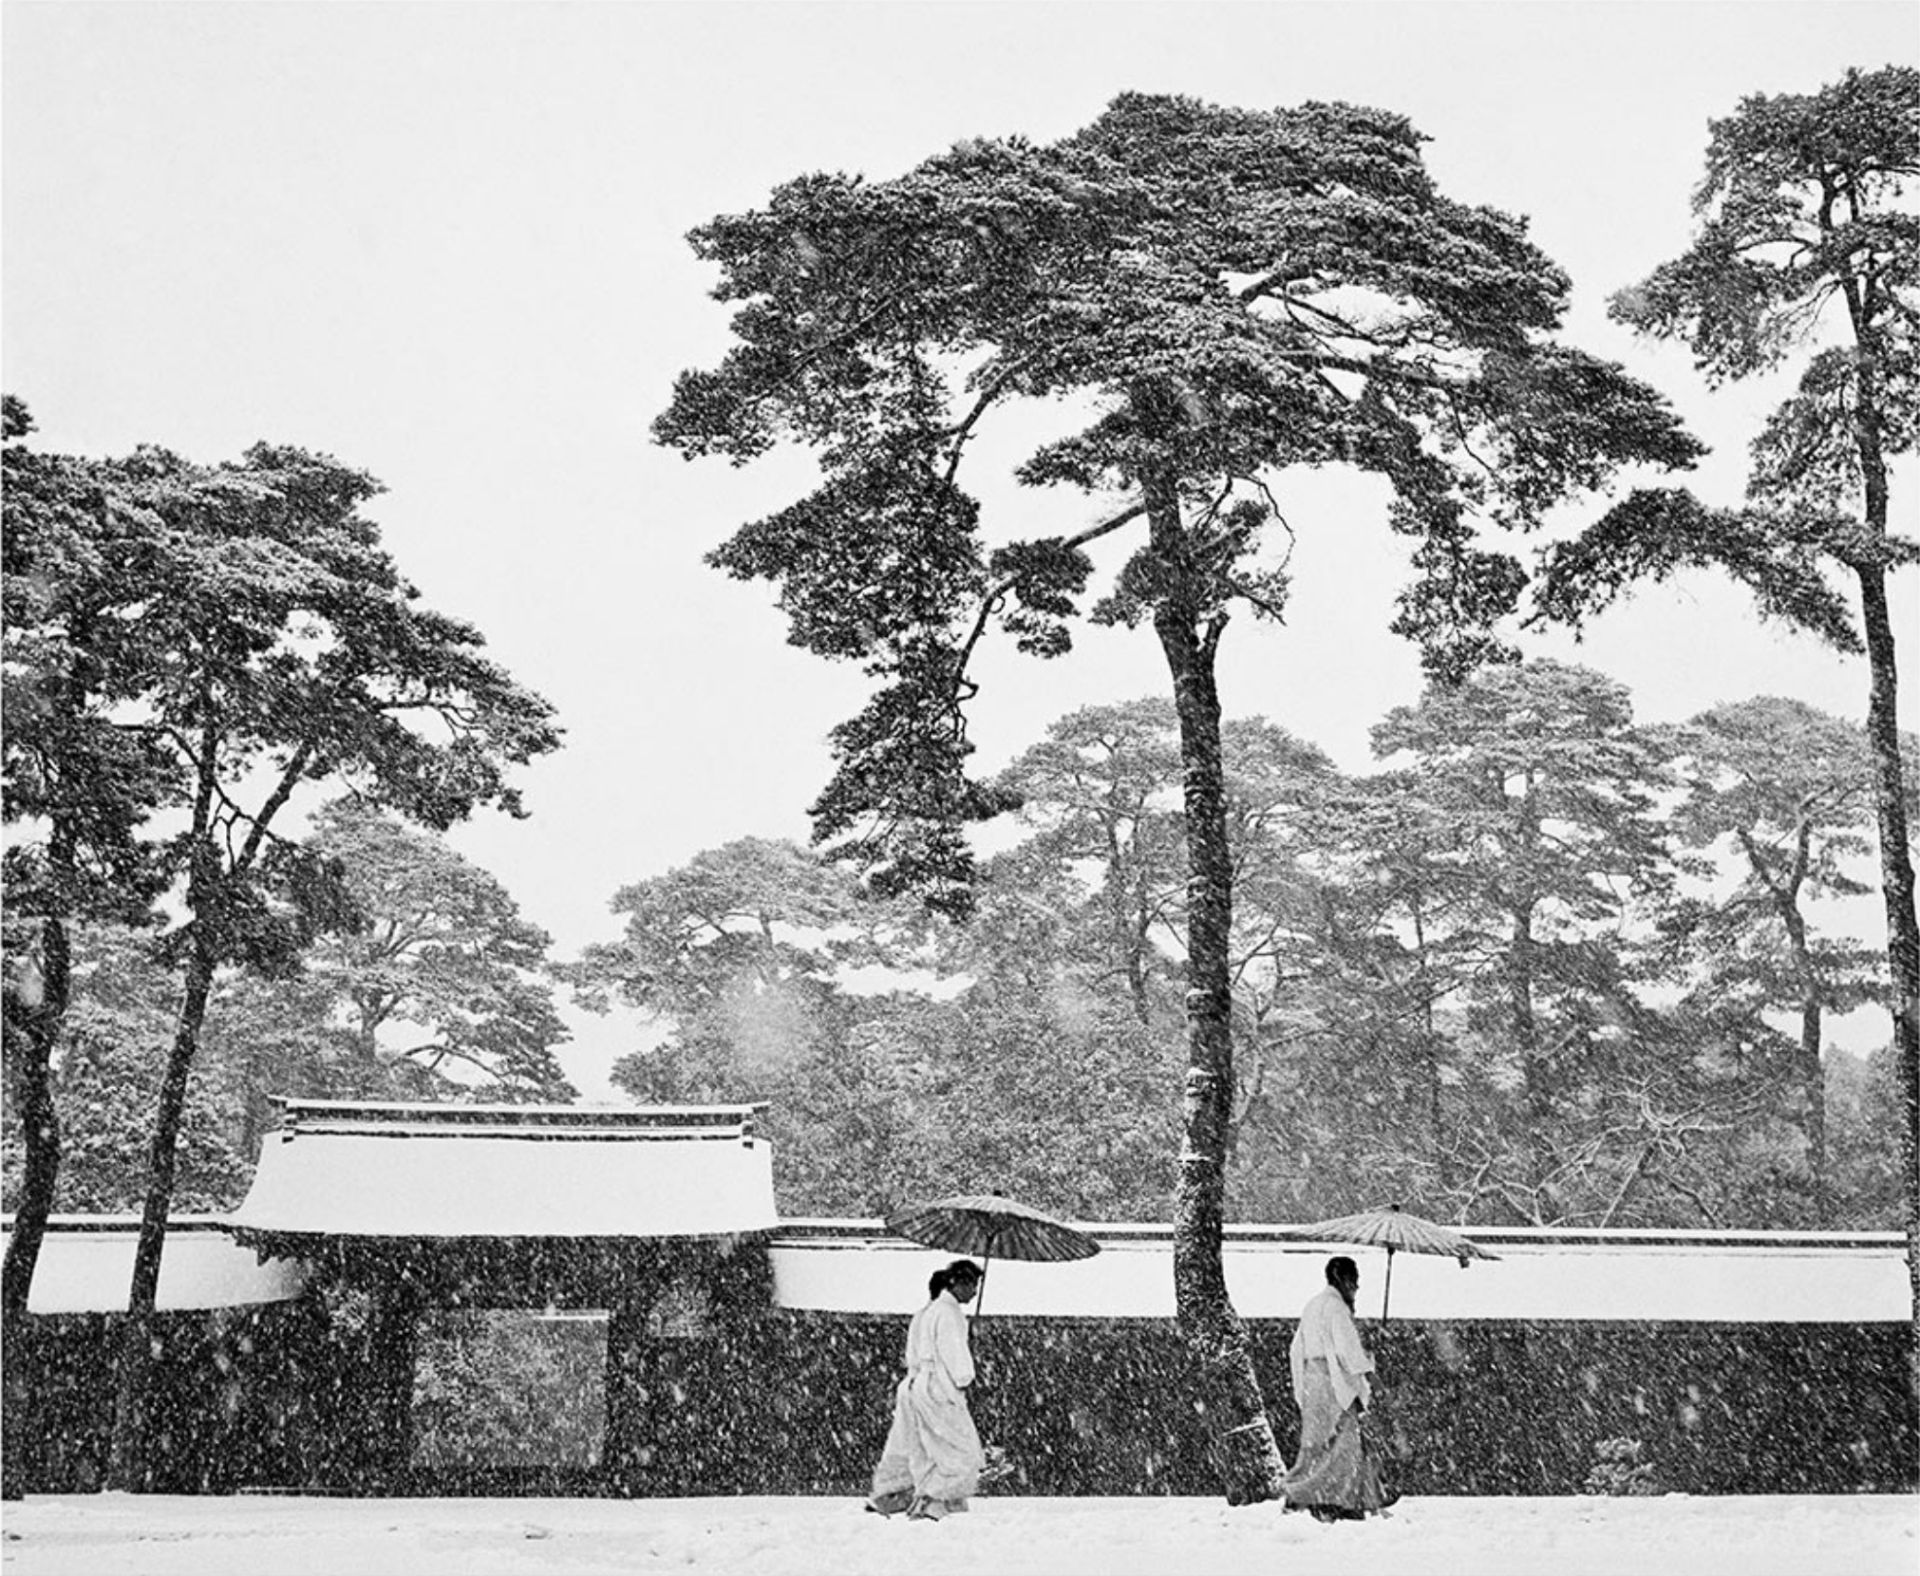 Werner Bischof "Courtyard of the Meiji Shrine, Tokyo, Japan, 1951" Photo Print